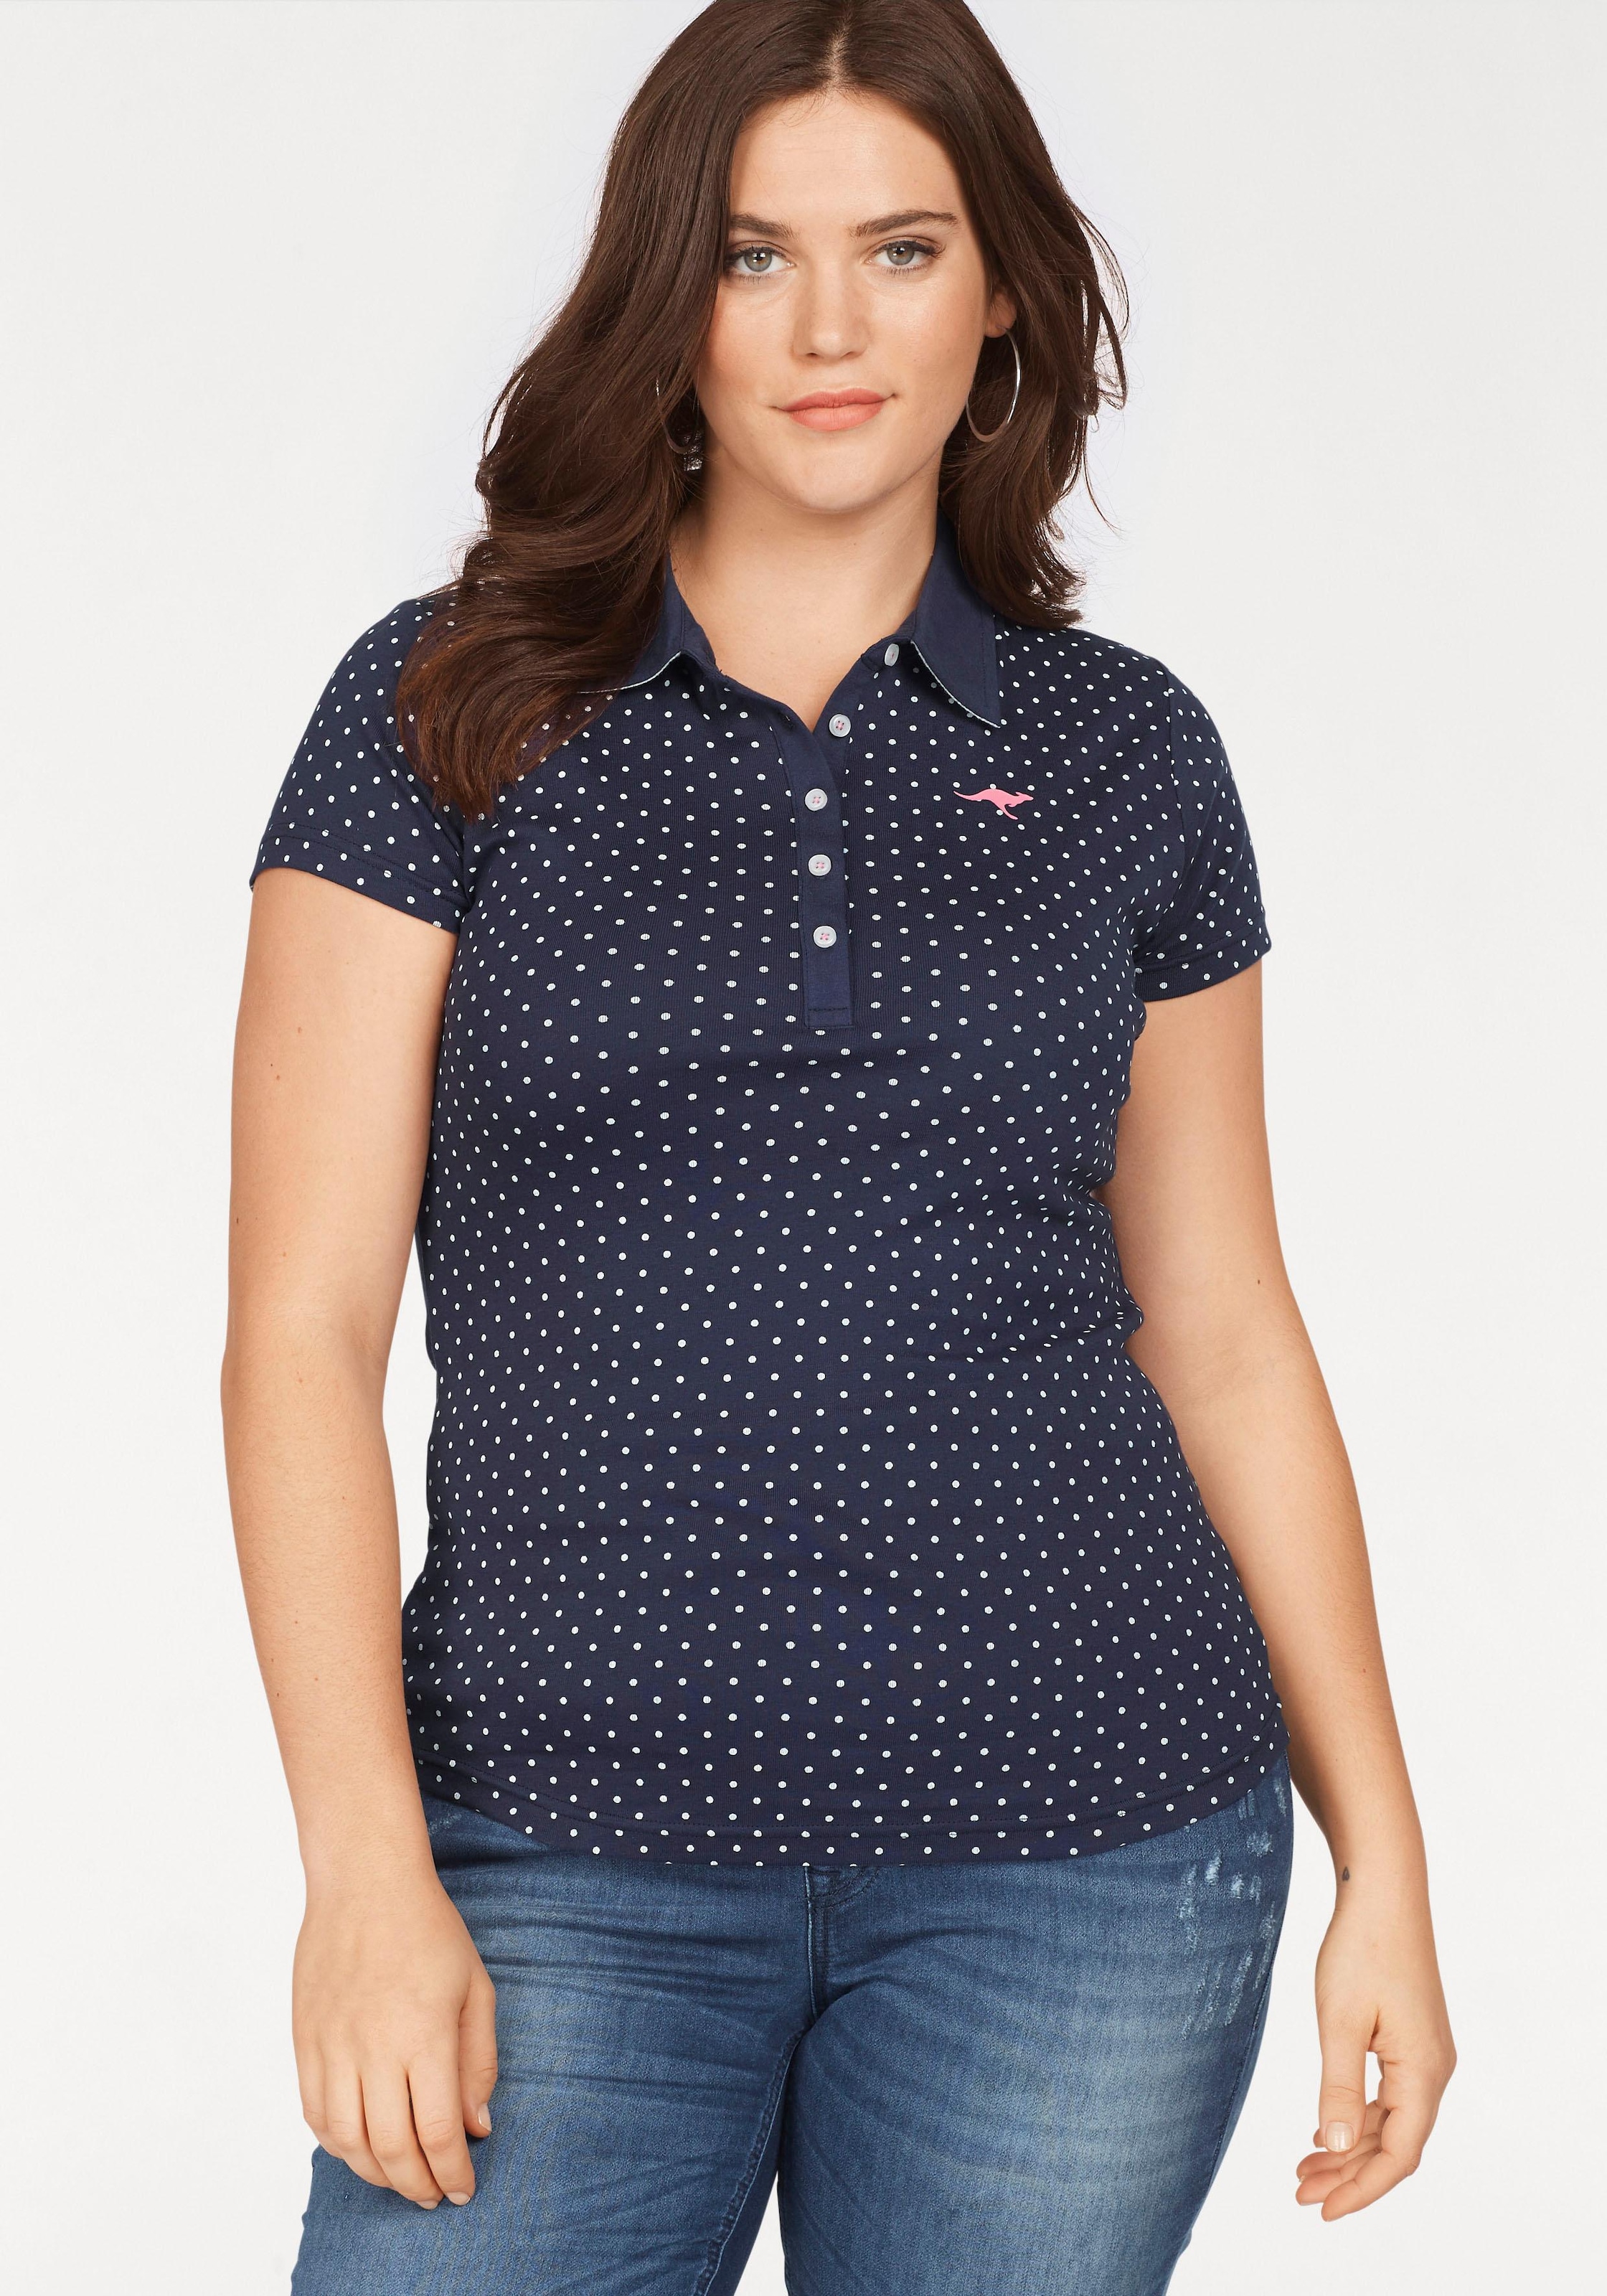 KangaROOS Poloshirt, im Online-Shop im kaufen tollen Pünktchen-Muster